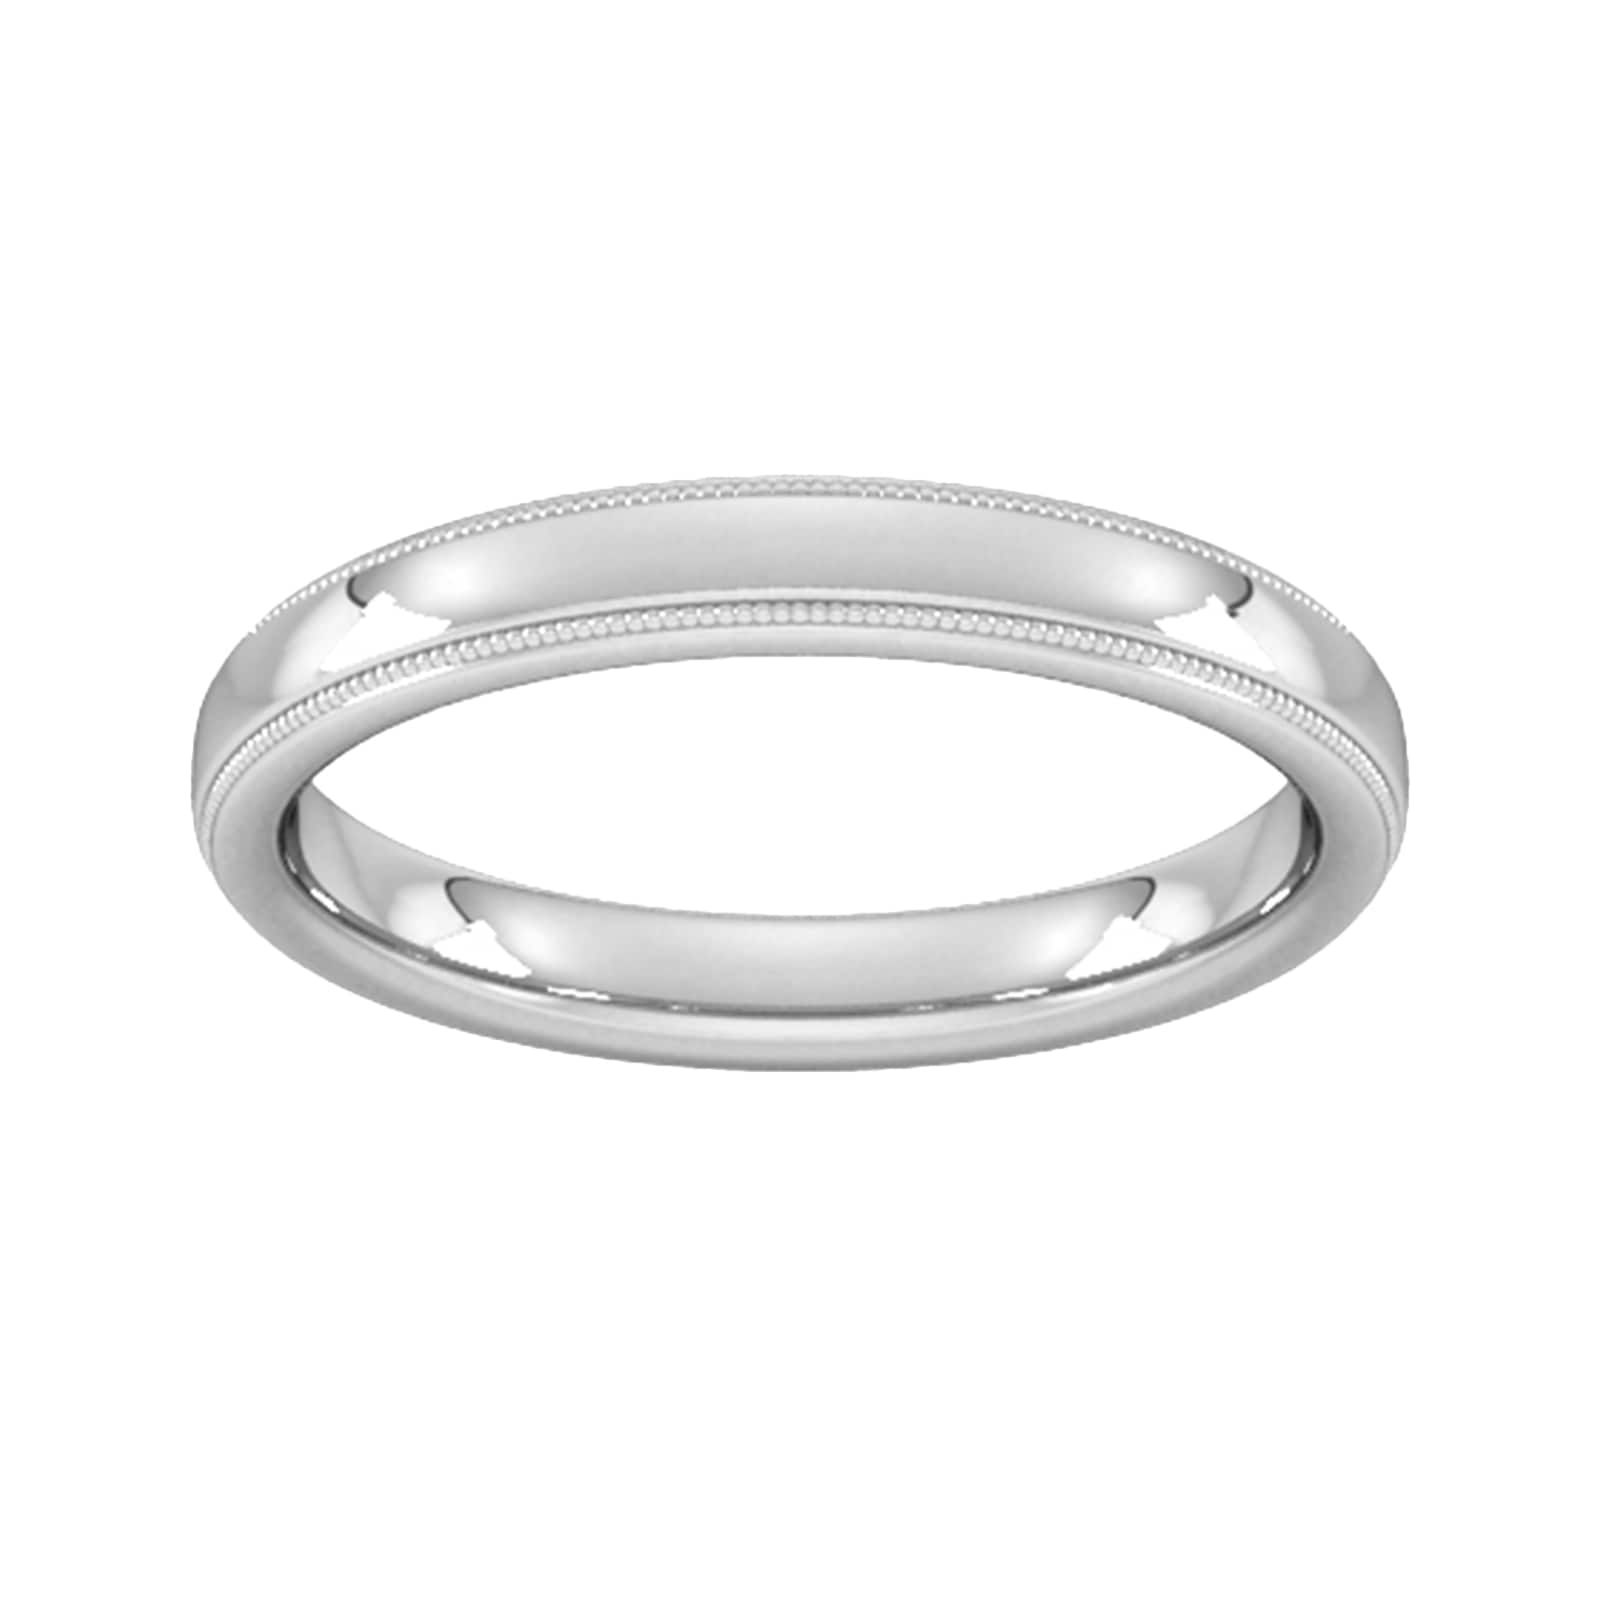 3mm Slight Court Heavy Milgrain Edge Wedding Ring In 9 Carat White Gold - Ring Size H